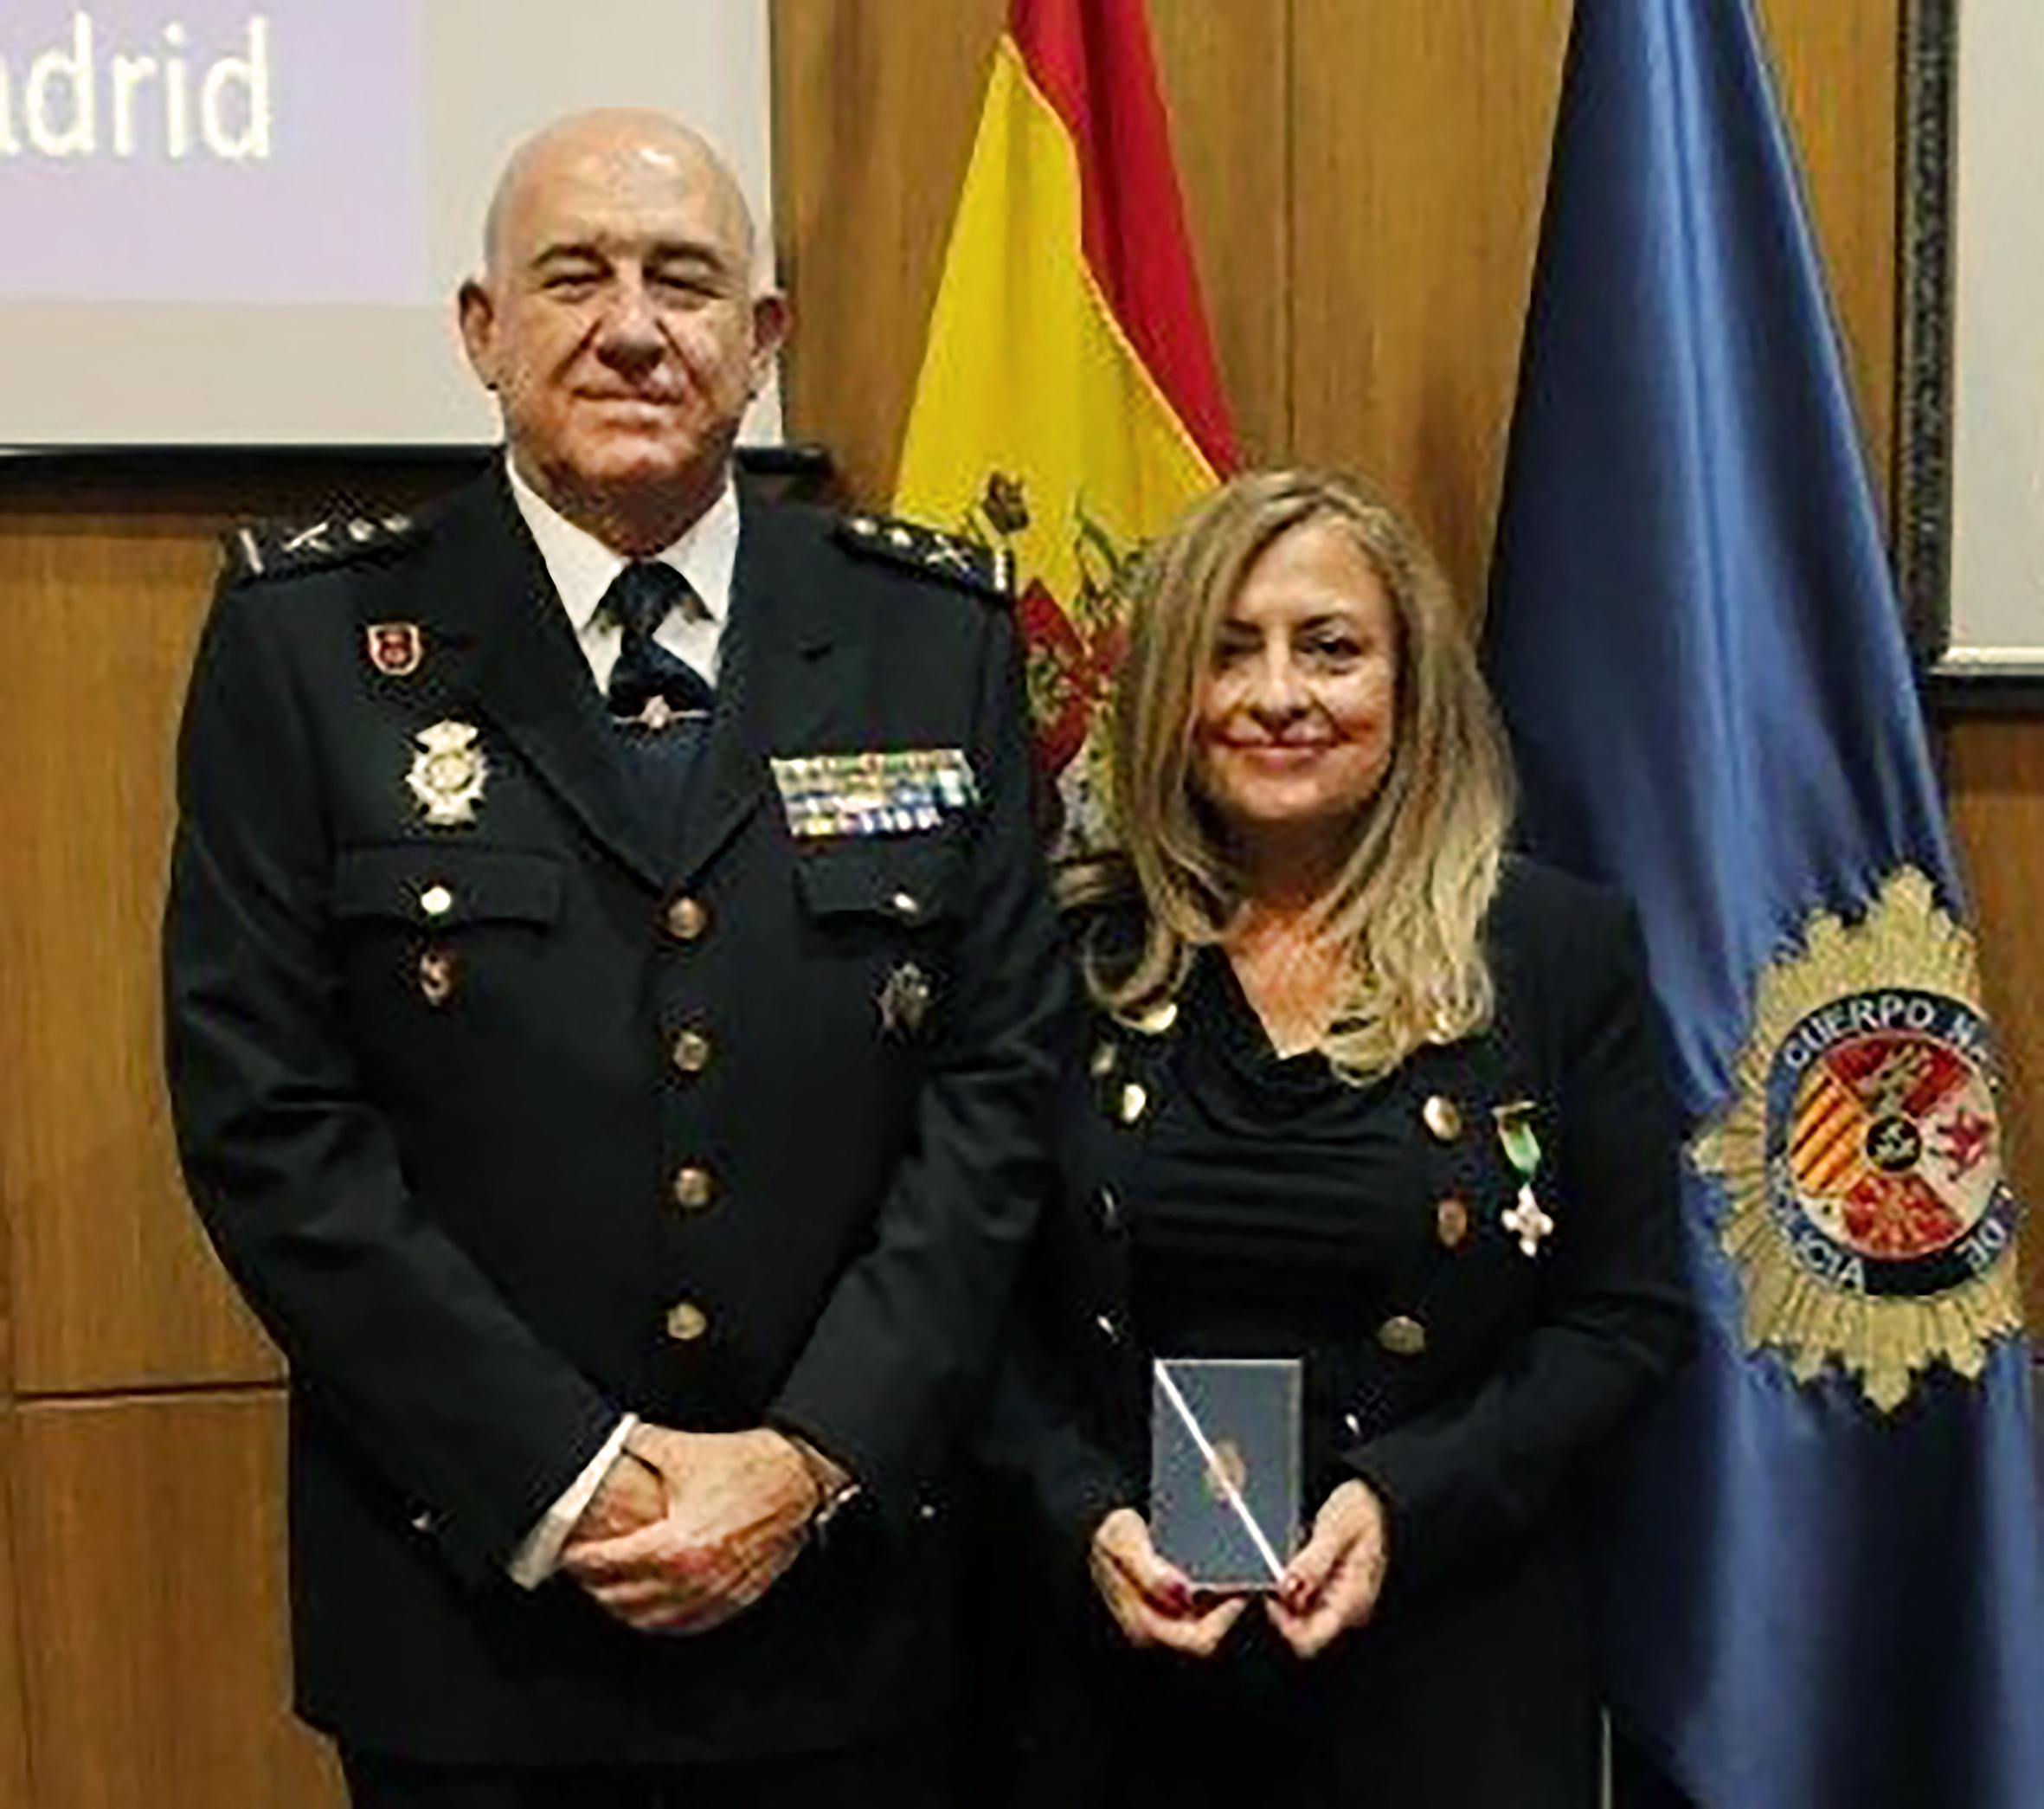 El Jefe Superior de Policía de Madrid, Jorge Martí Rodríguez, y María Paz García Vera, tras la entrega de la insignia